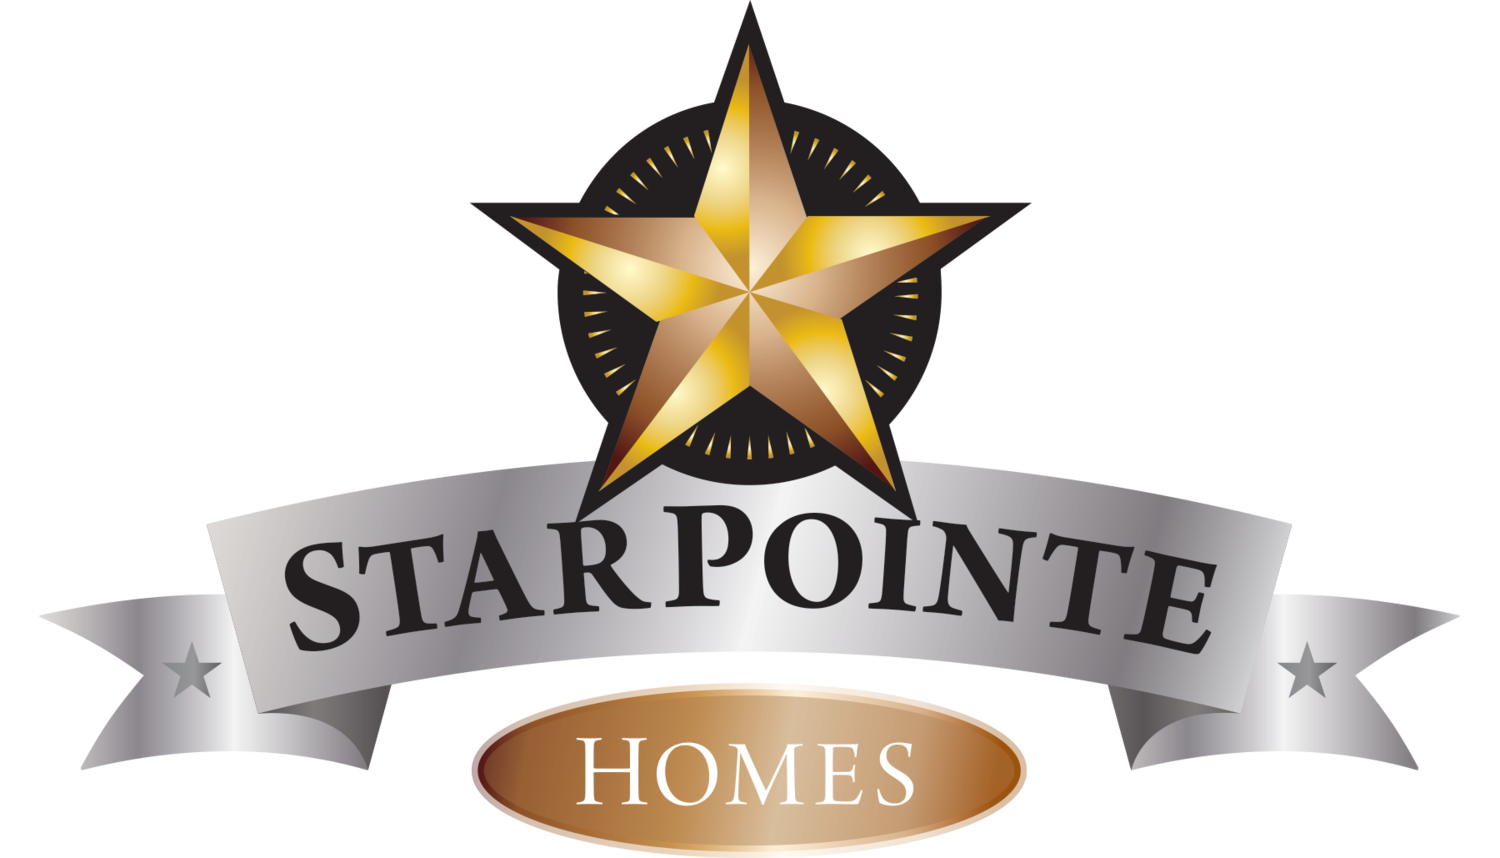 Starpointe Homes